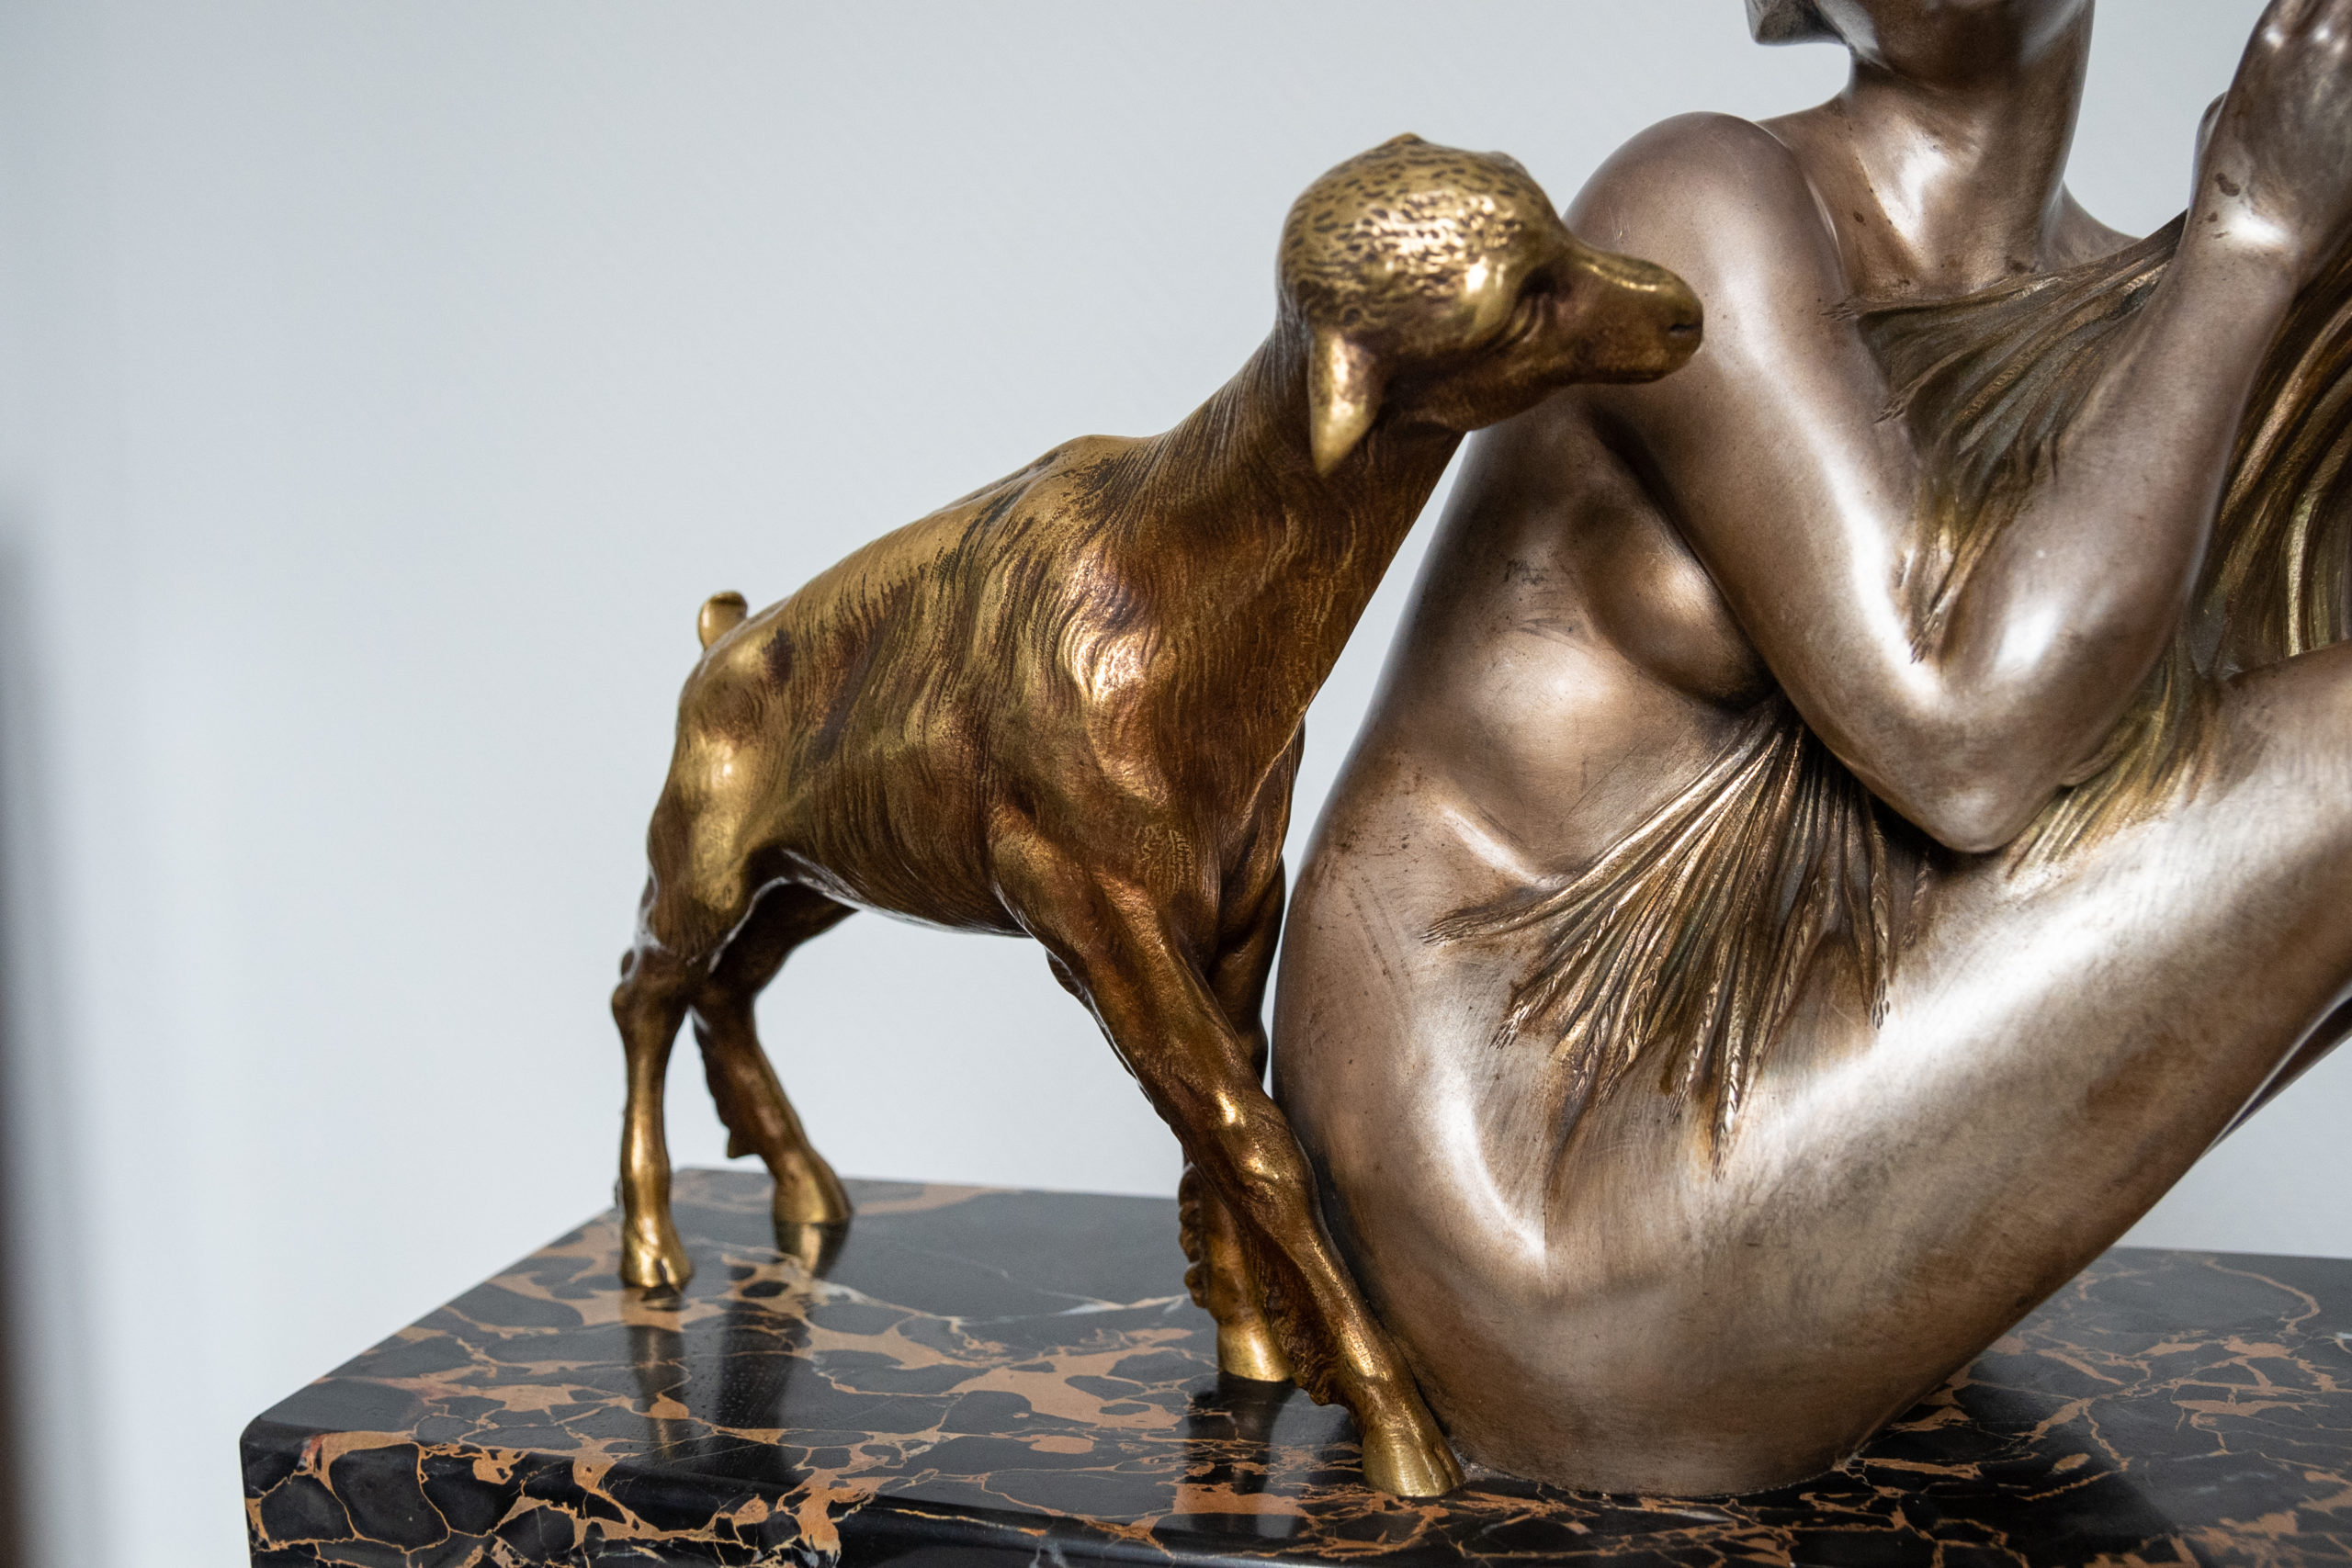 Armand-godard-sculpture-bronze-argenté-art-deco-XXe-france-aurore-morisse-affaire-conclue-antiquaire-liege-belgique4